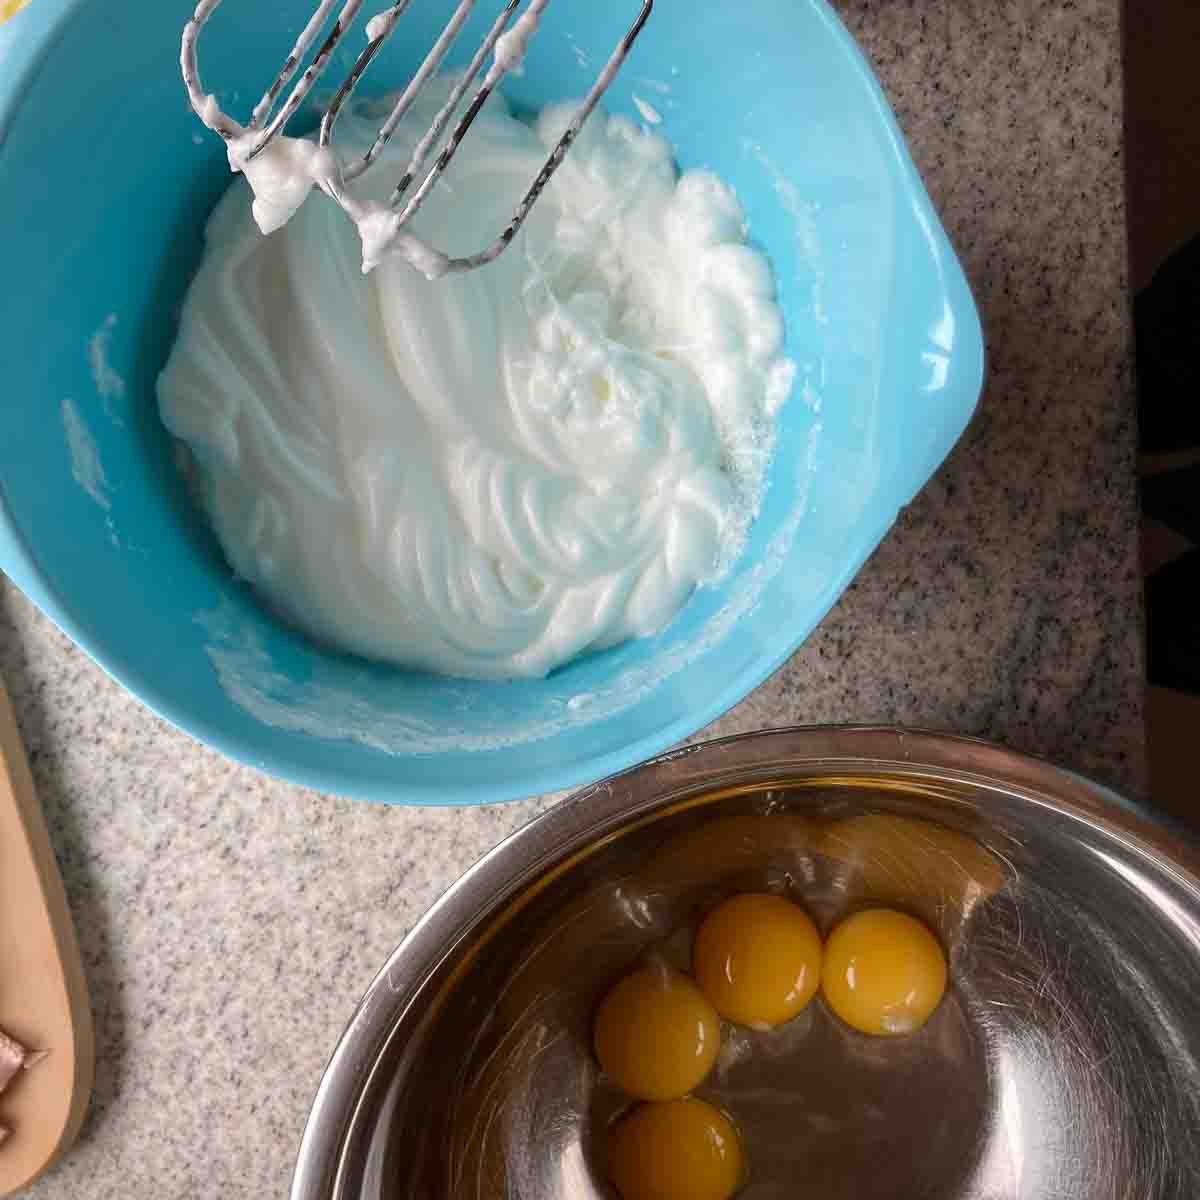 Schüsseln mit Eidotter und zweite Schüssel mit geschlagenem Eischnee - bowls with beaten egg whites and egg yolks.